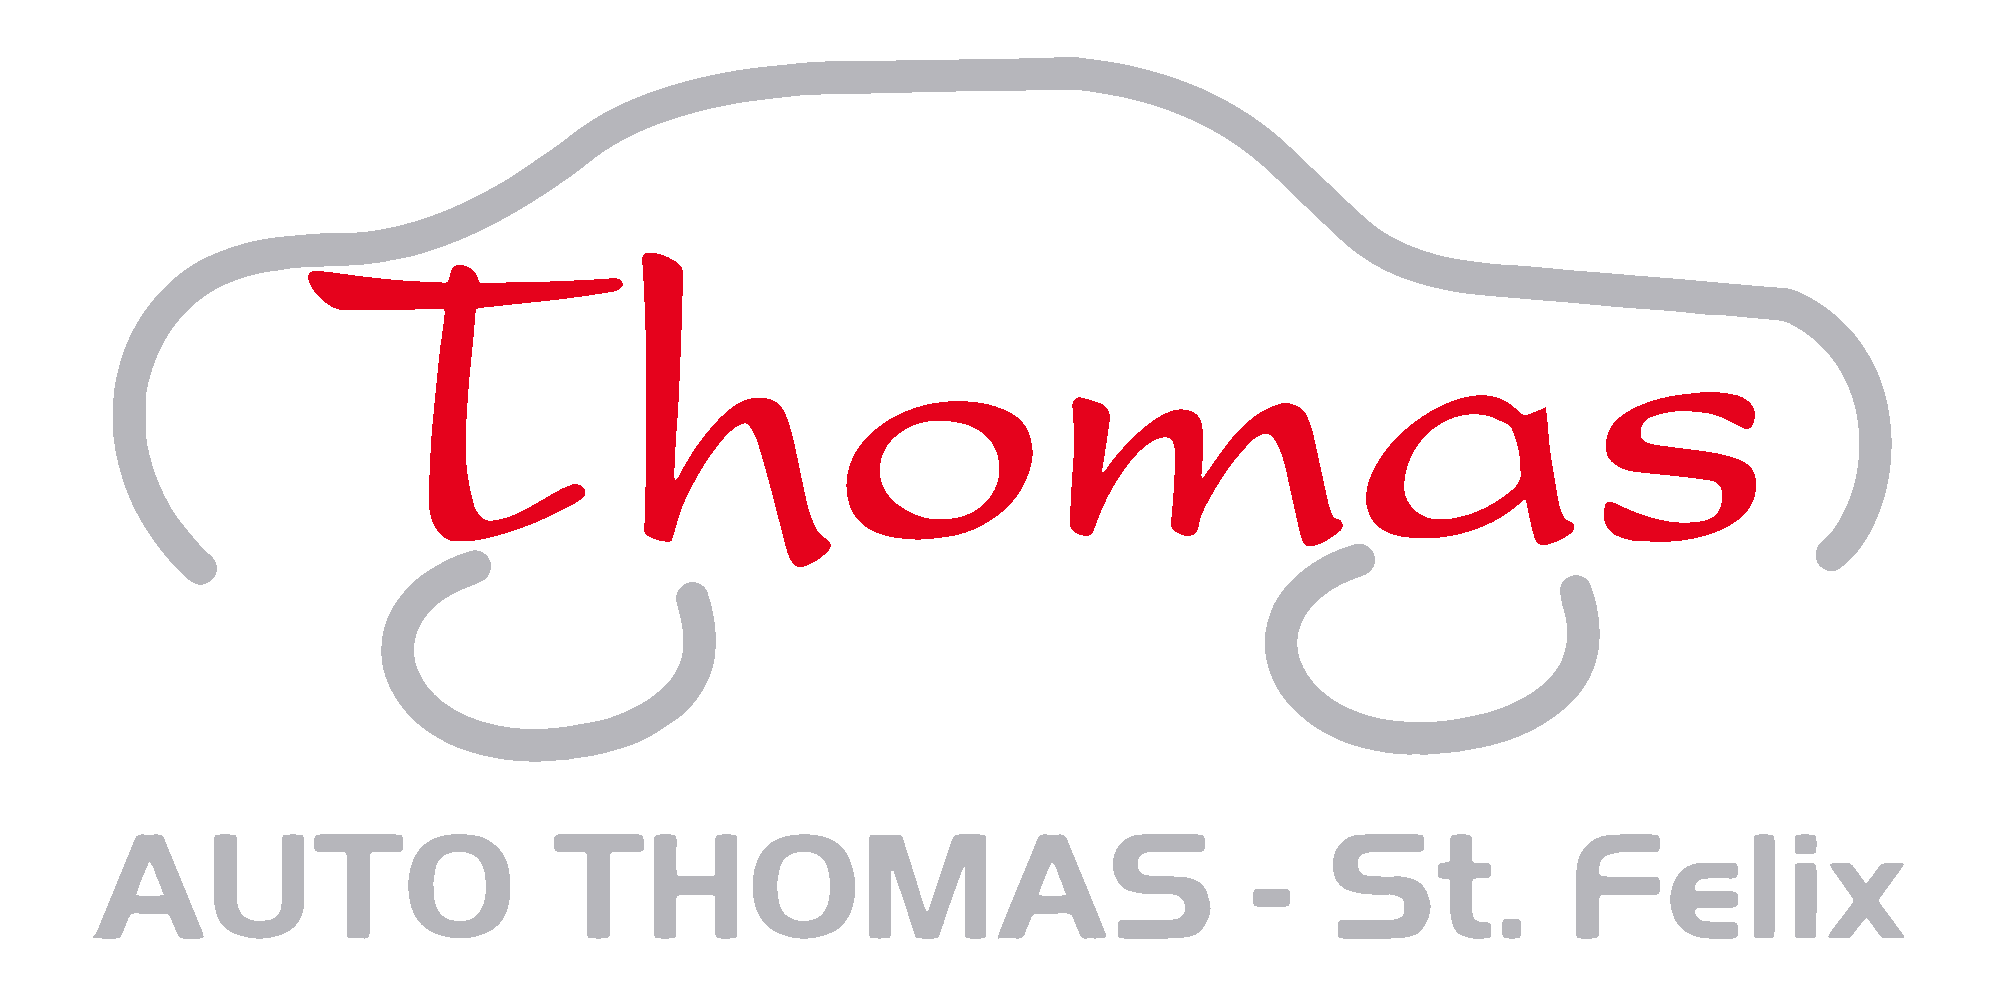 Auto Thomas